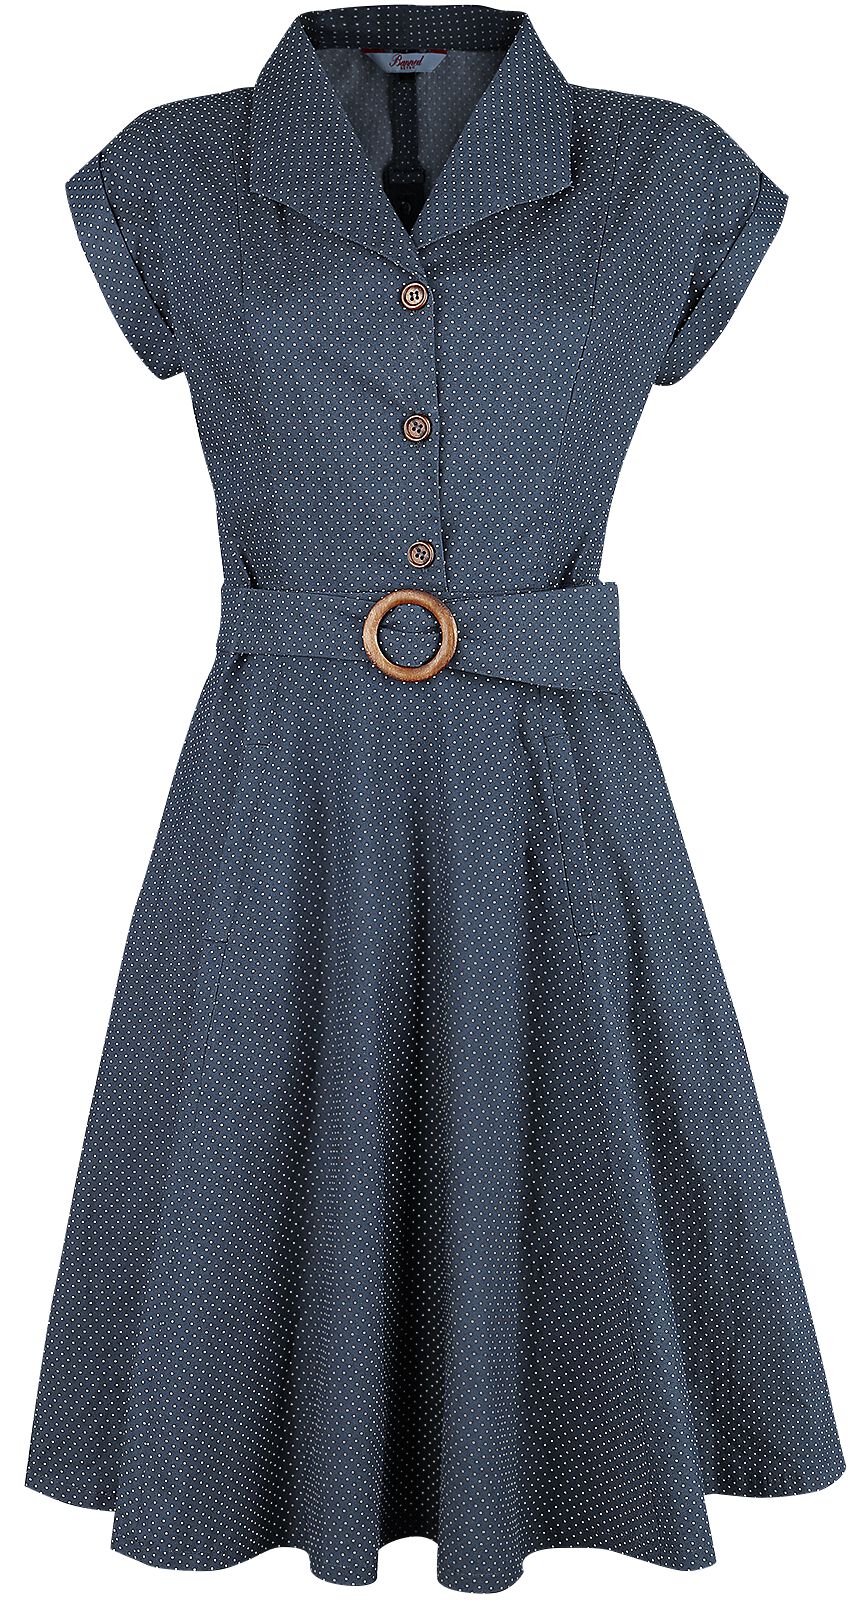 Banned Retro - Rockabilly Kleid knielang - Spot Perfection Fit & Flare Dress - XS bis 4XL - für Damen - Größe 4XL - navy